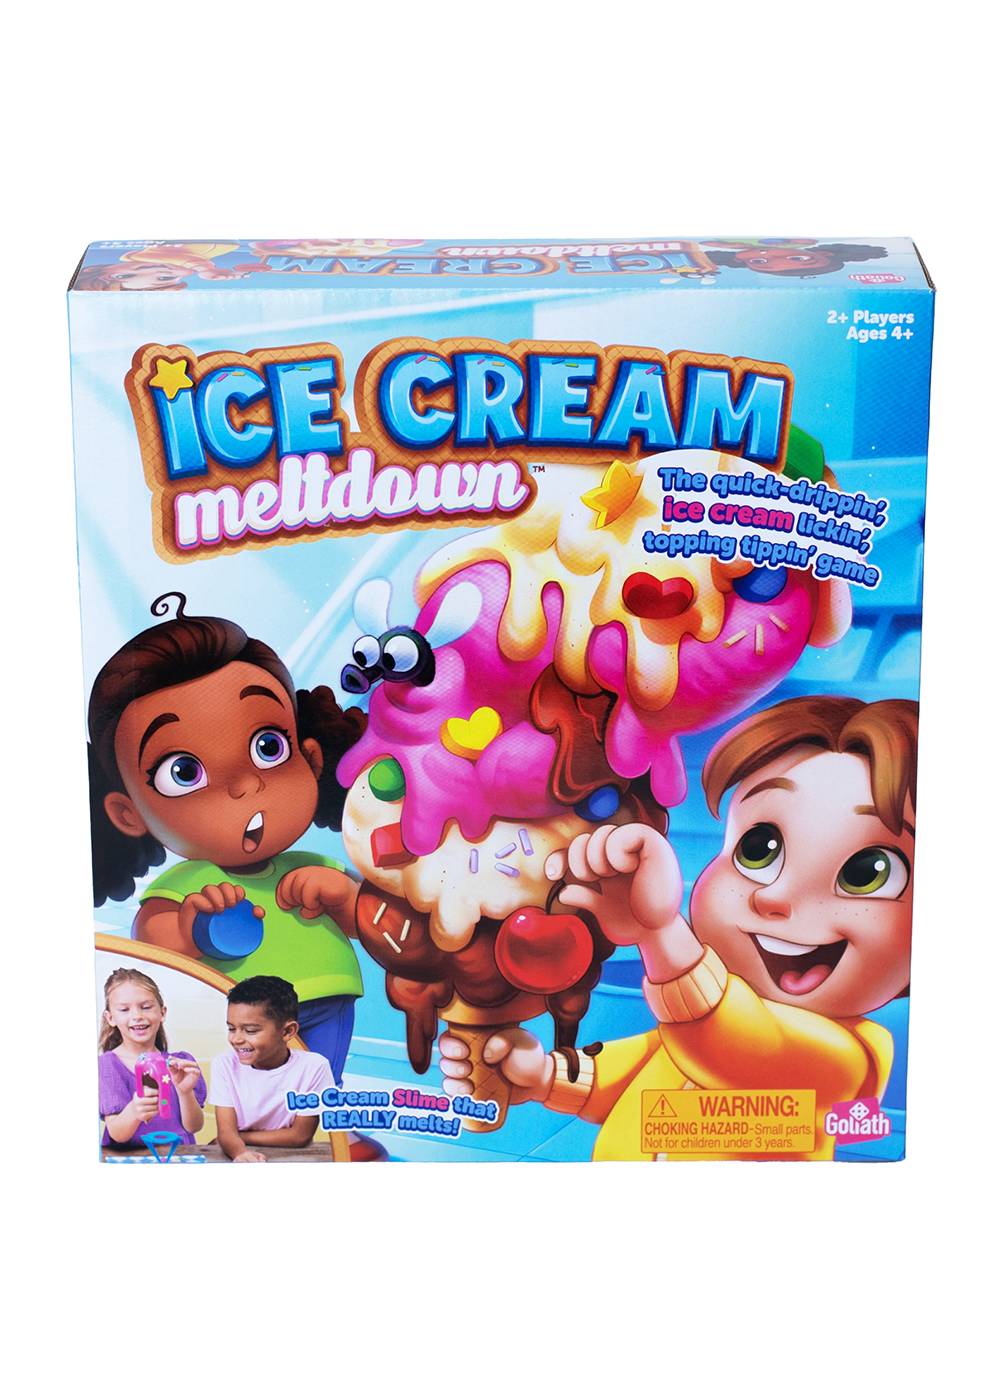 Ice Cream Metldown Kids Game; image 1 of 4